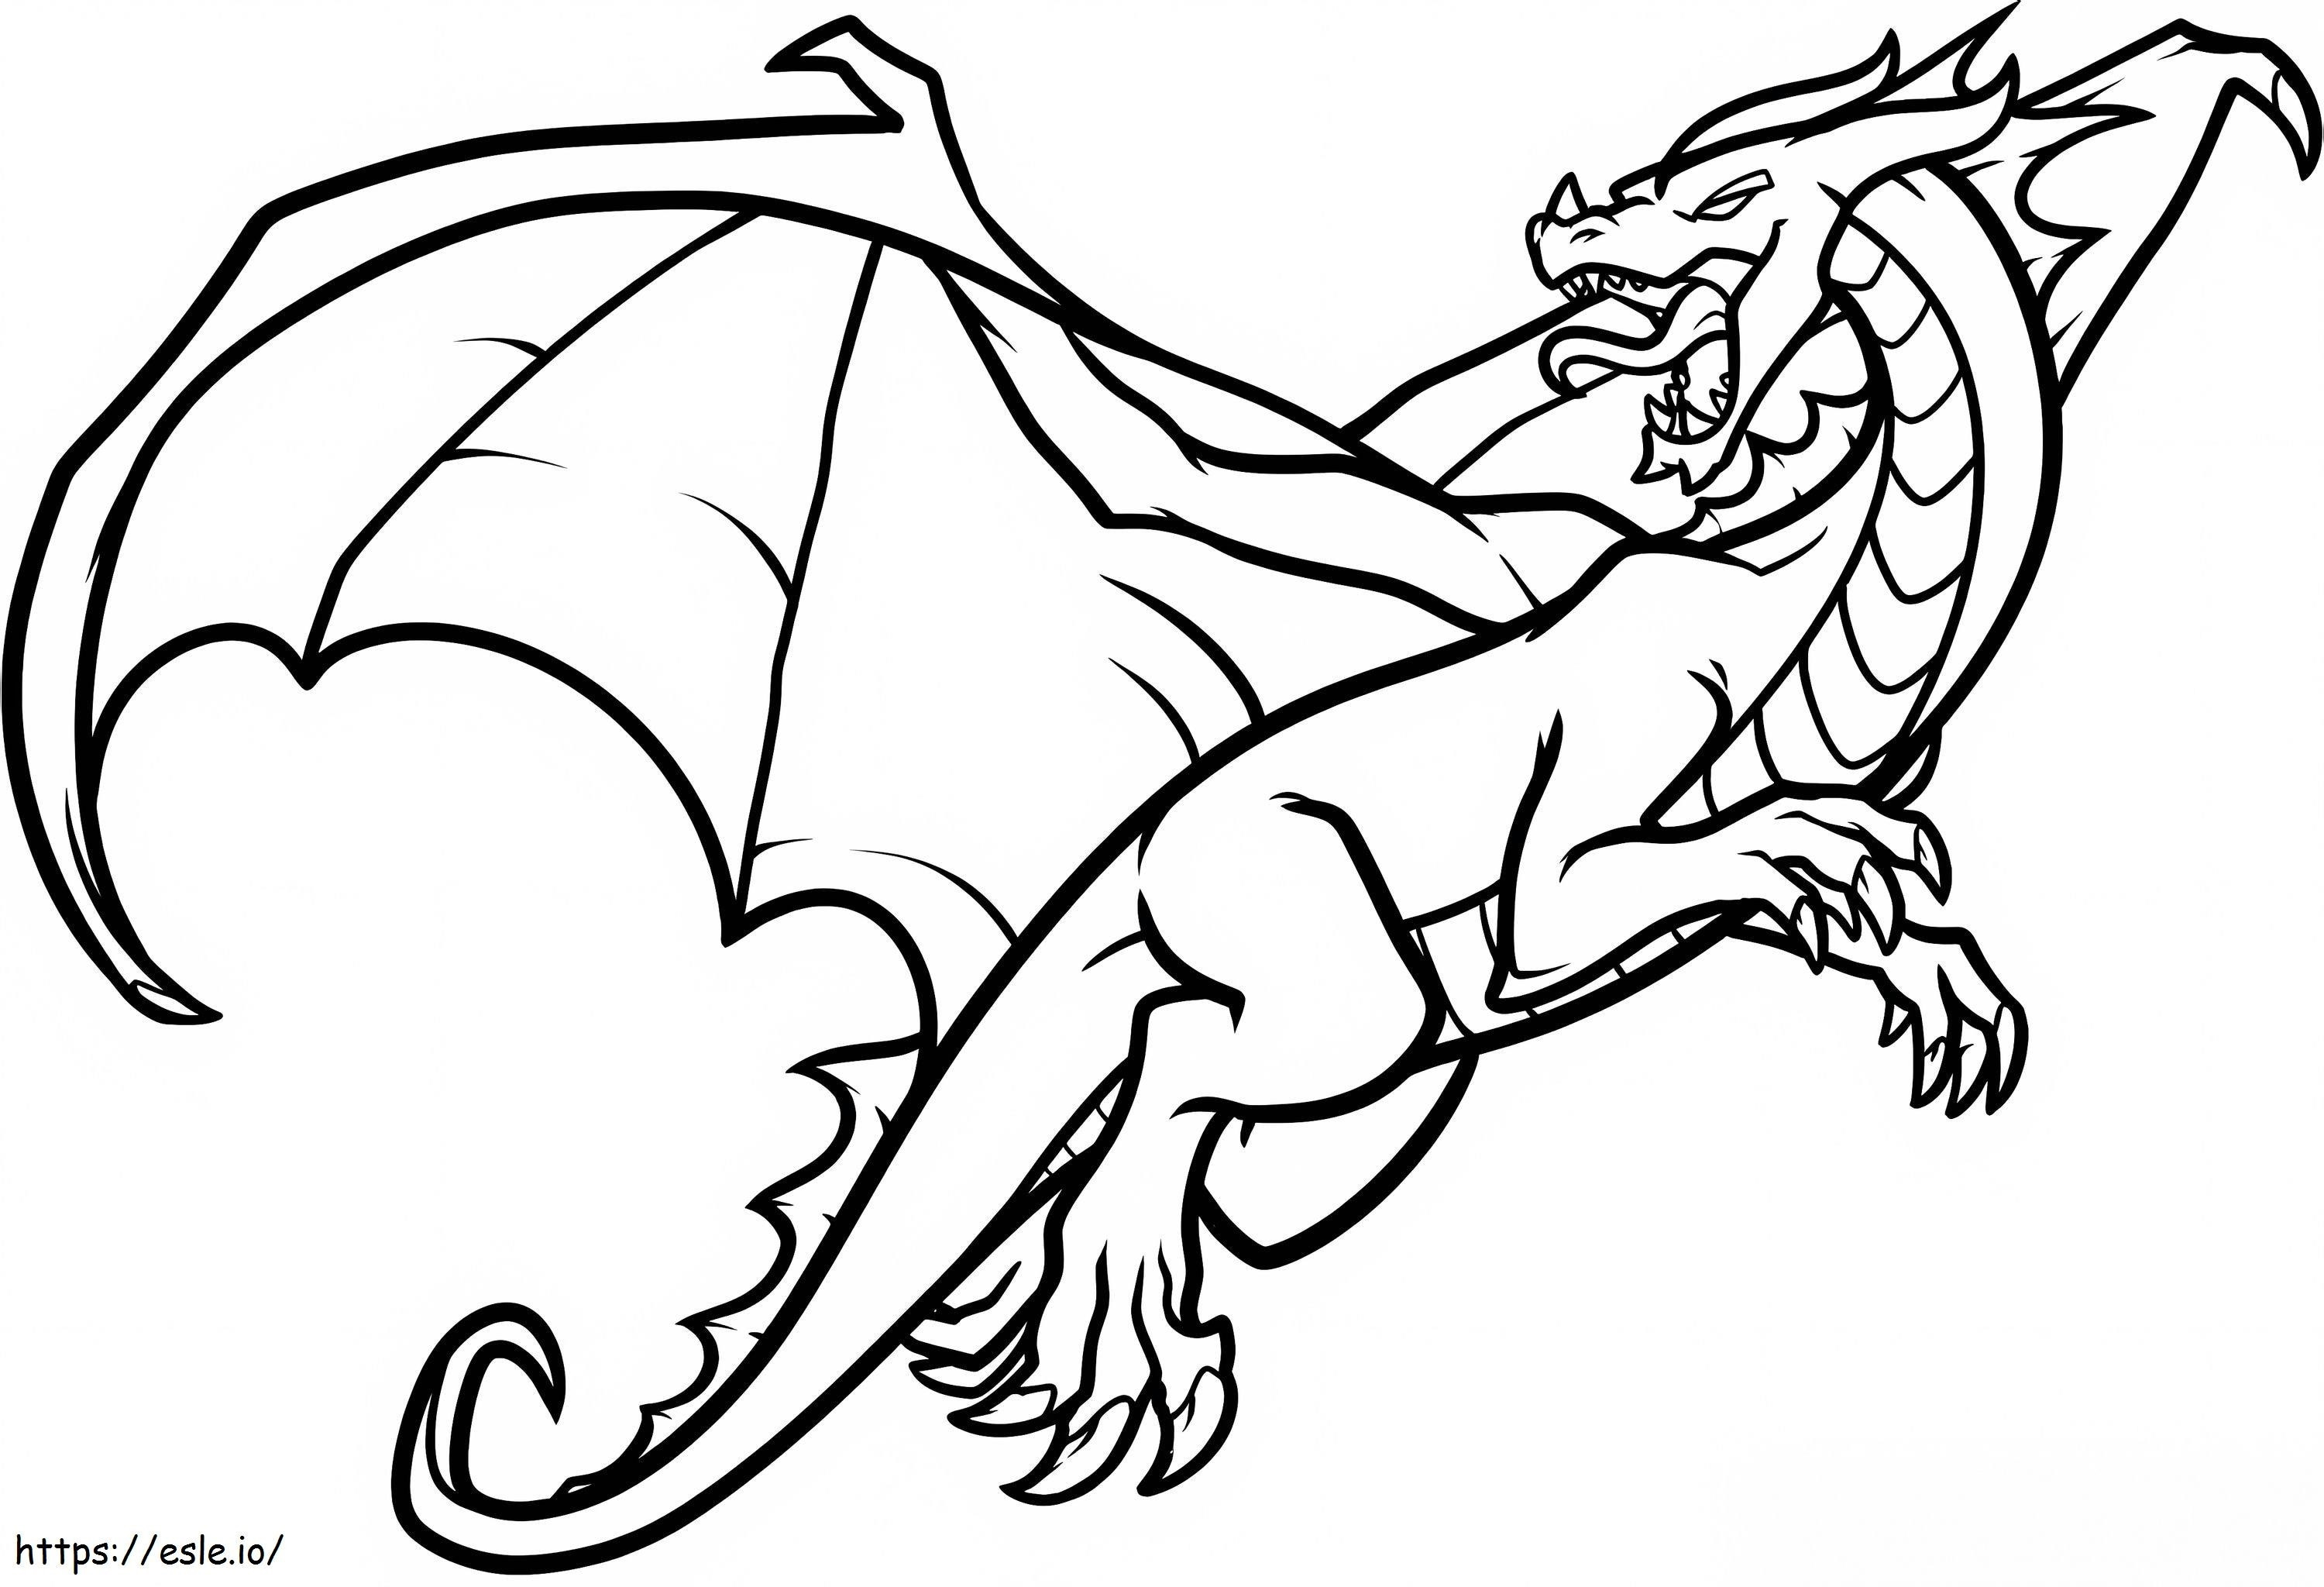 Coloriage Le dragon vole à imprimer dessin